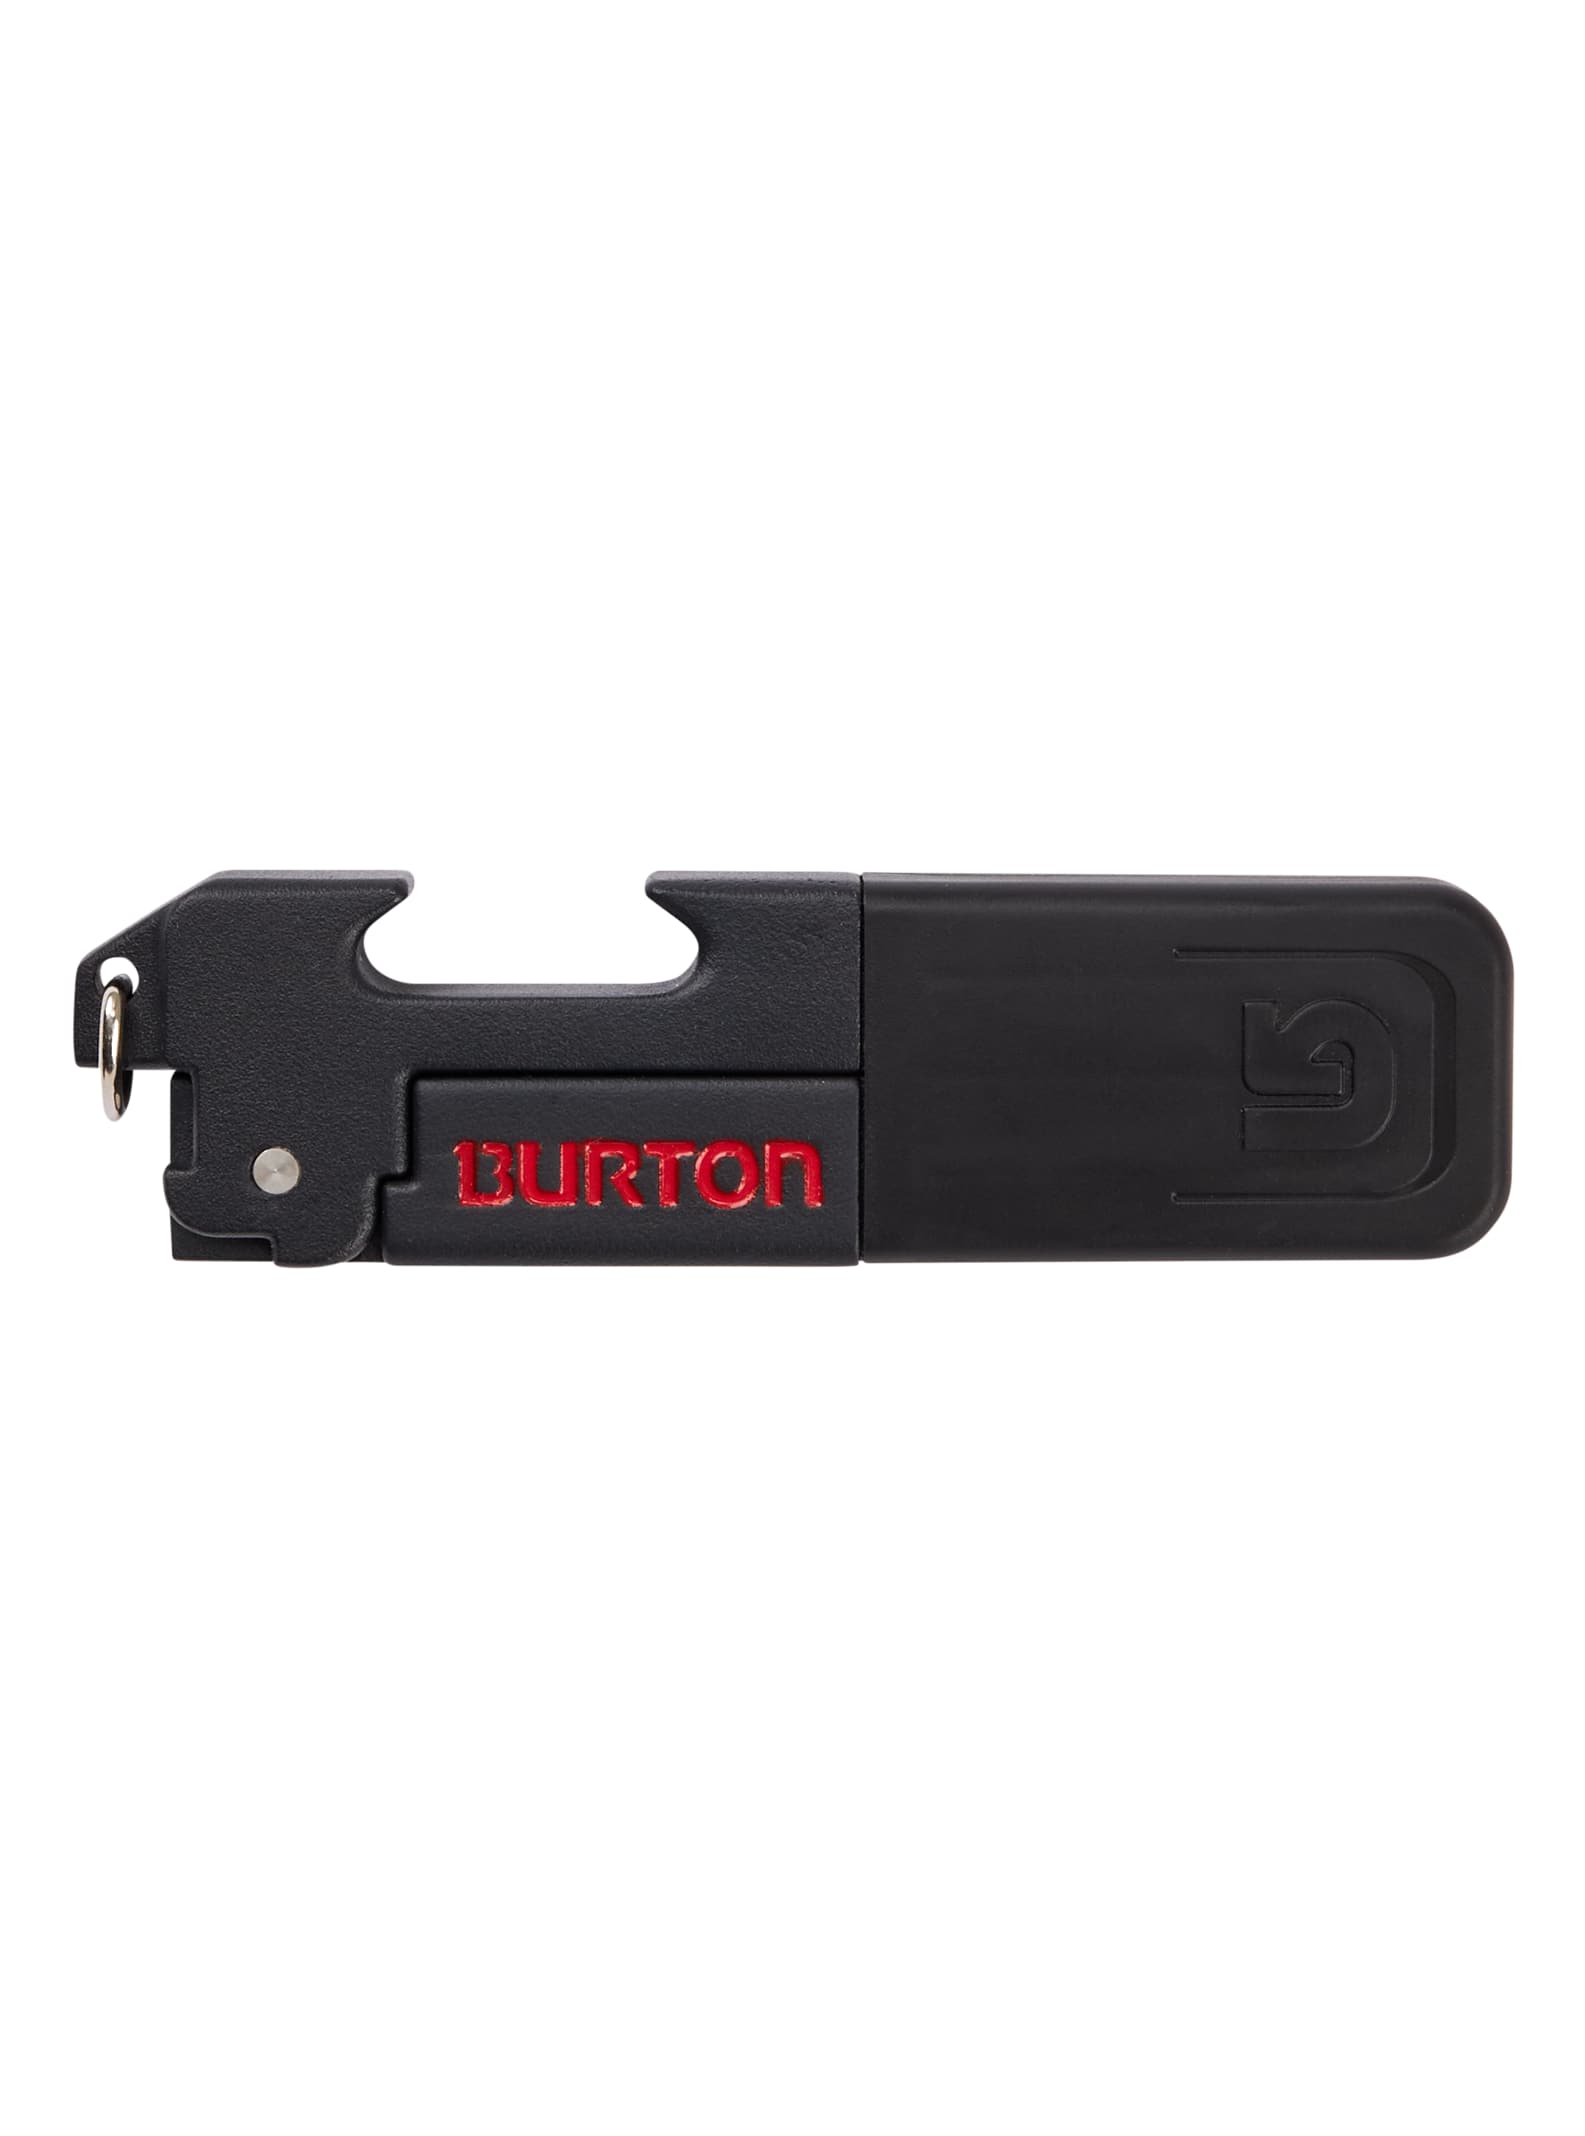 Burton snowboard Bullet tool tuning Black 